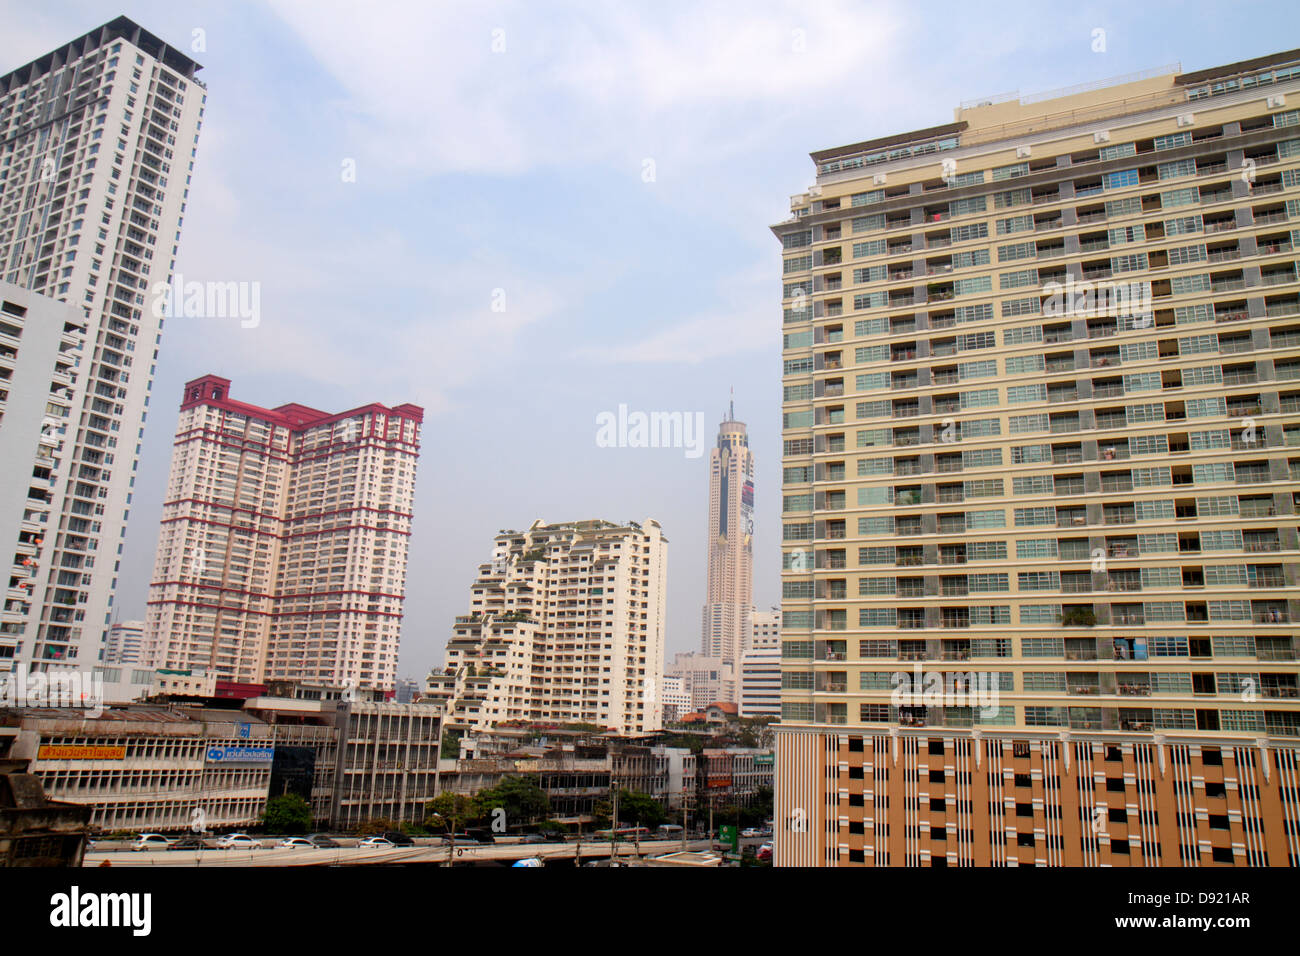 Bangkok Thaïlande,Thai,Ratchathewi,hauteur gratte-ciel gratte-ciel bâtiment bâtiments condominiums condos condos condos résidences apa Banque D'Images